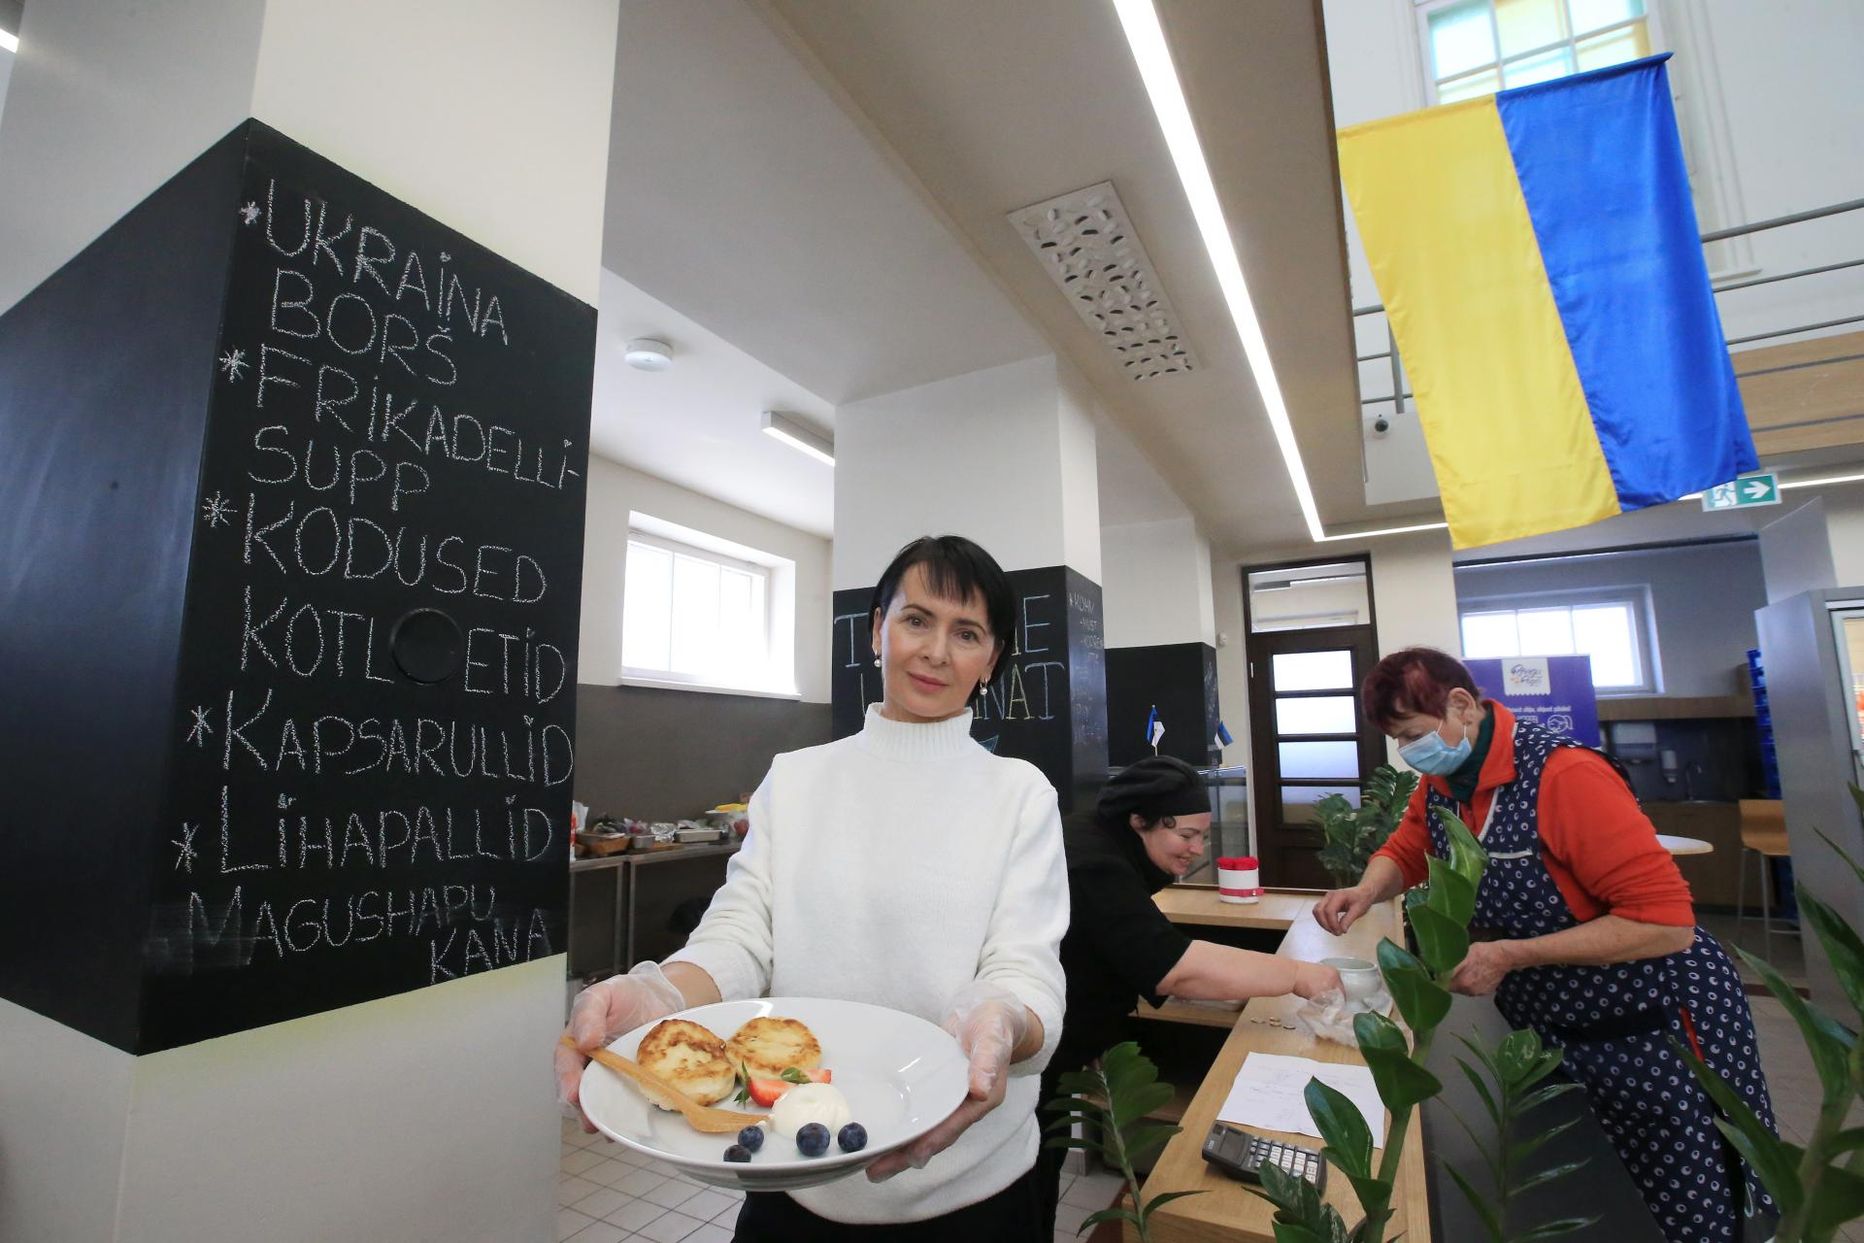 Turuhoone ukraina kohvikus töötav sõjapõgenik Ljudmilla Kirichyk ütles, et uus töö tahab veel harjumist, kuid nad kõik annavad endast parima.